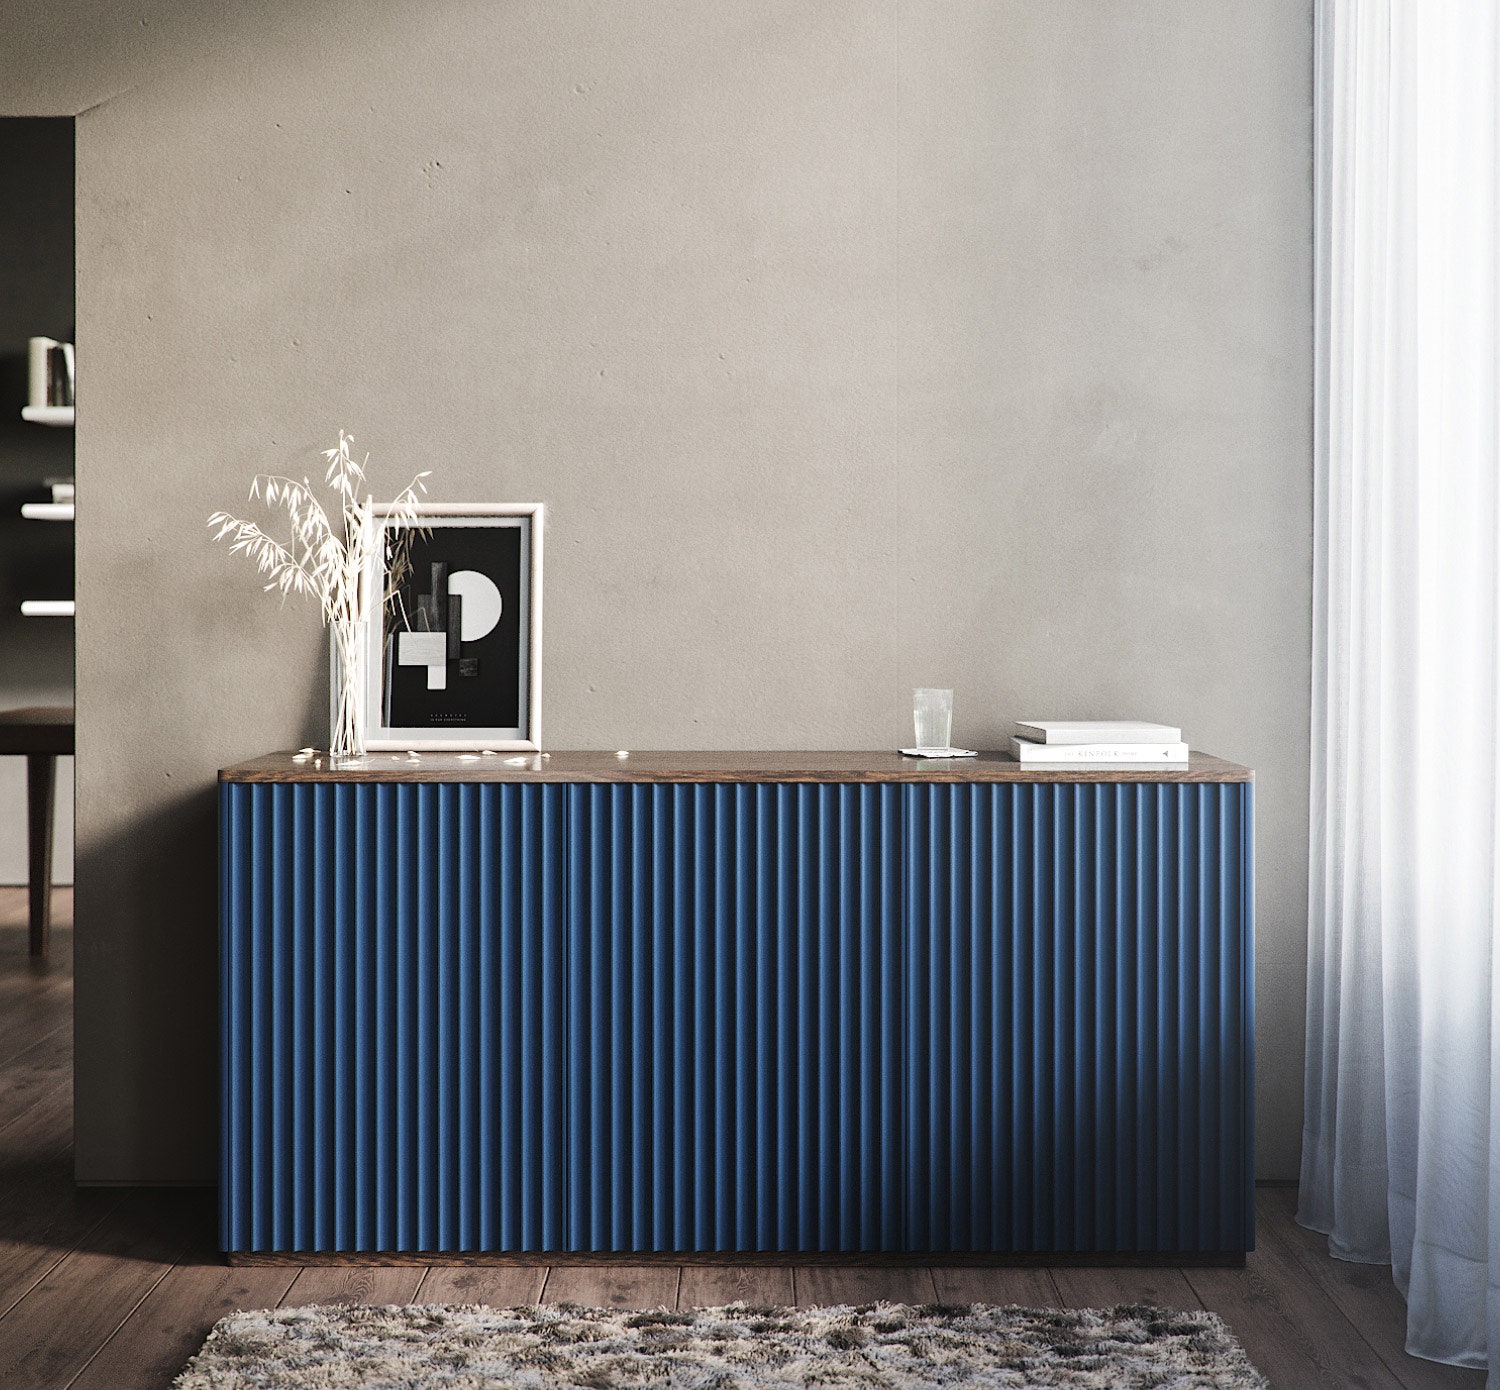 Мебель для минималистичных интерьеров коллекция CODE от The IDEA